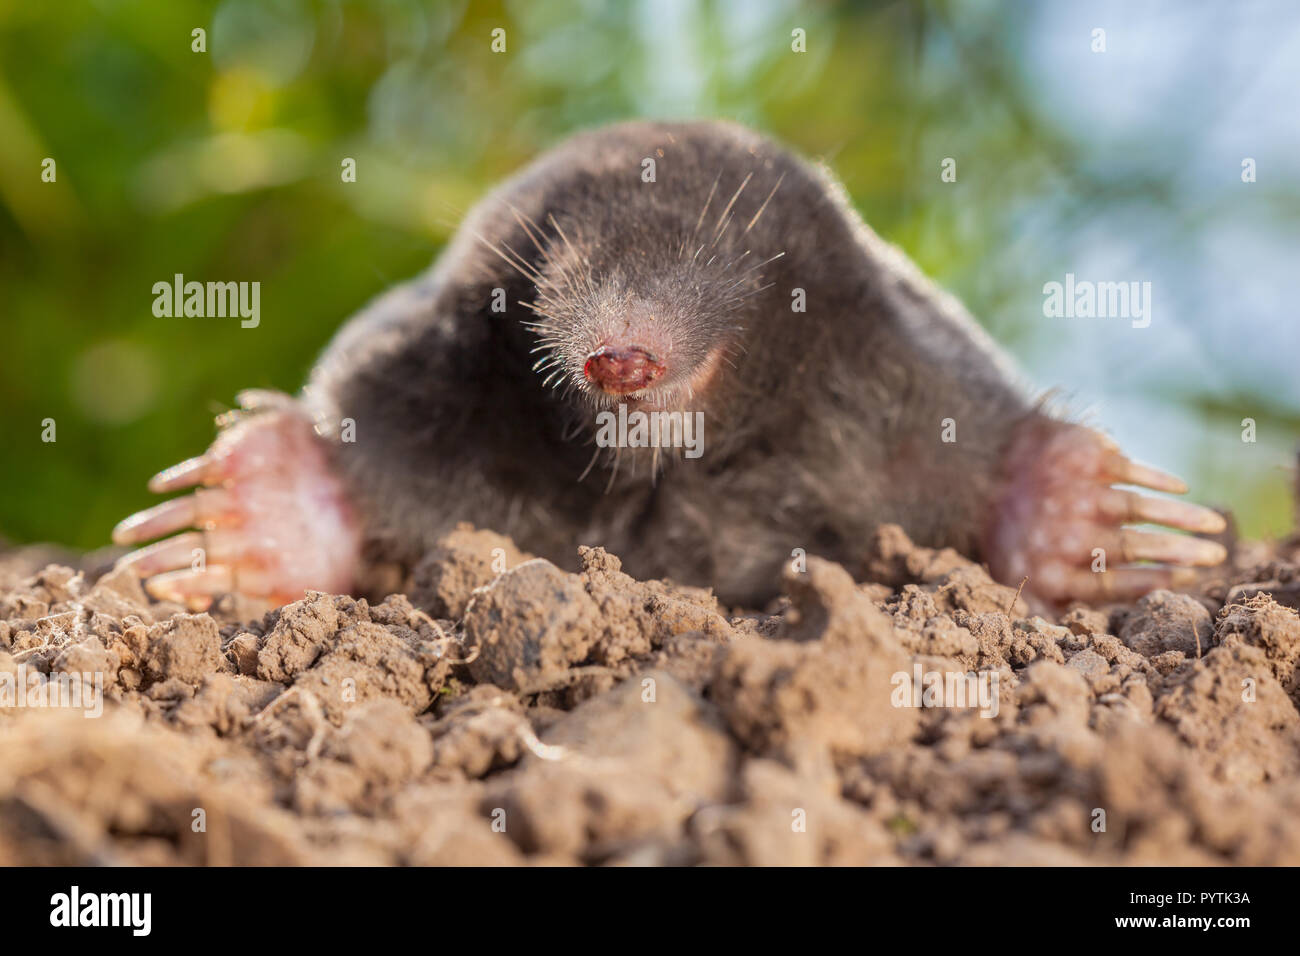 Portrait von Europäischen mole oder gemeinsamen Maulwurf (Talpa europaea) Dies ist ein Säugetier der Bestellung Soricomorpha und in Europa sehr verbreitet. Stockfoto